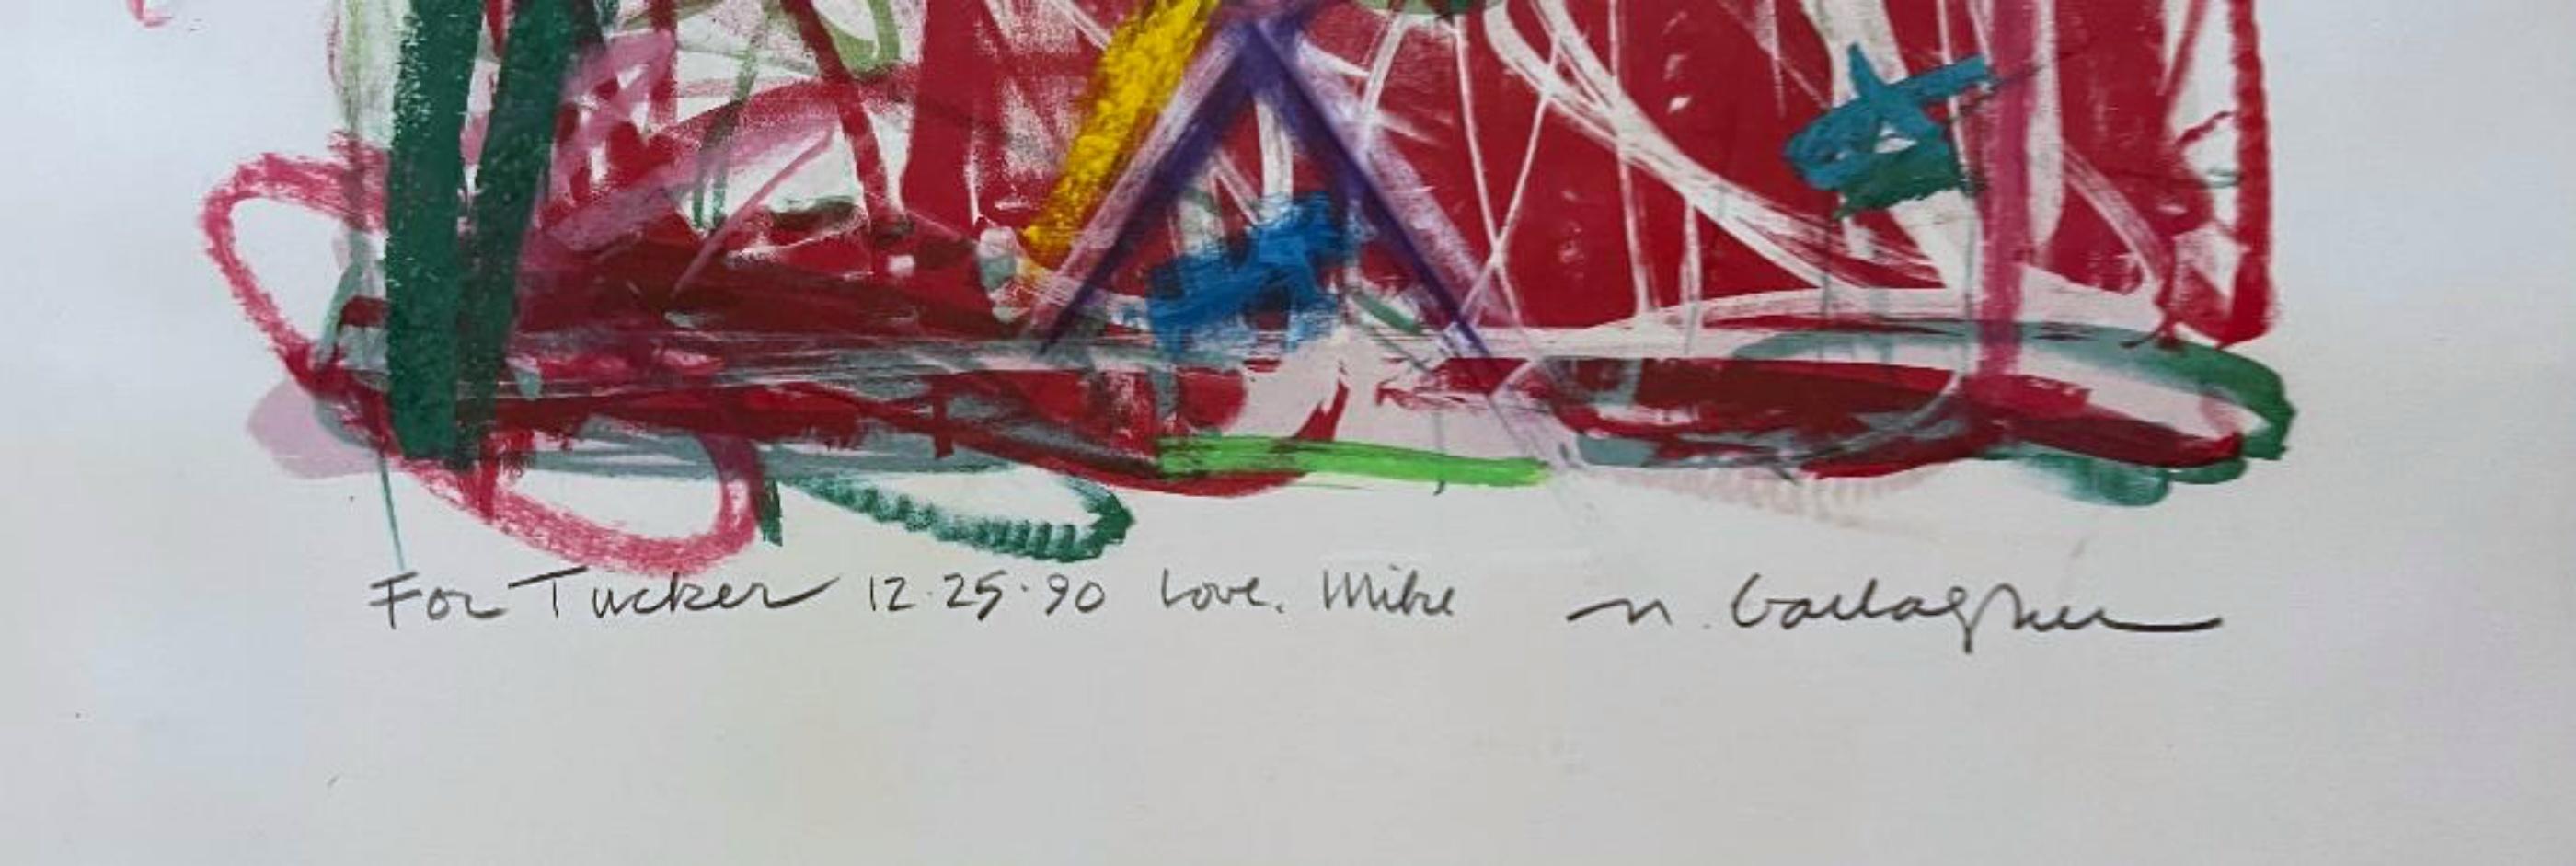 Michael Gallagher
Abstraktes expressionistisches Gemälde ohne Titel auf Papier (zweimal beschriftet und handsigniert), 1990
Acryl auf Papier Gemälde
Vom Künstler handsigniert, zweimal signiert, datiert und auf der Vorderseite liebevoll an Tucker